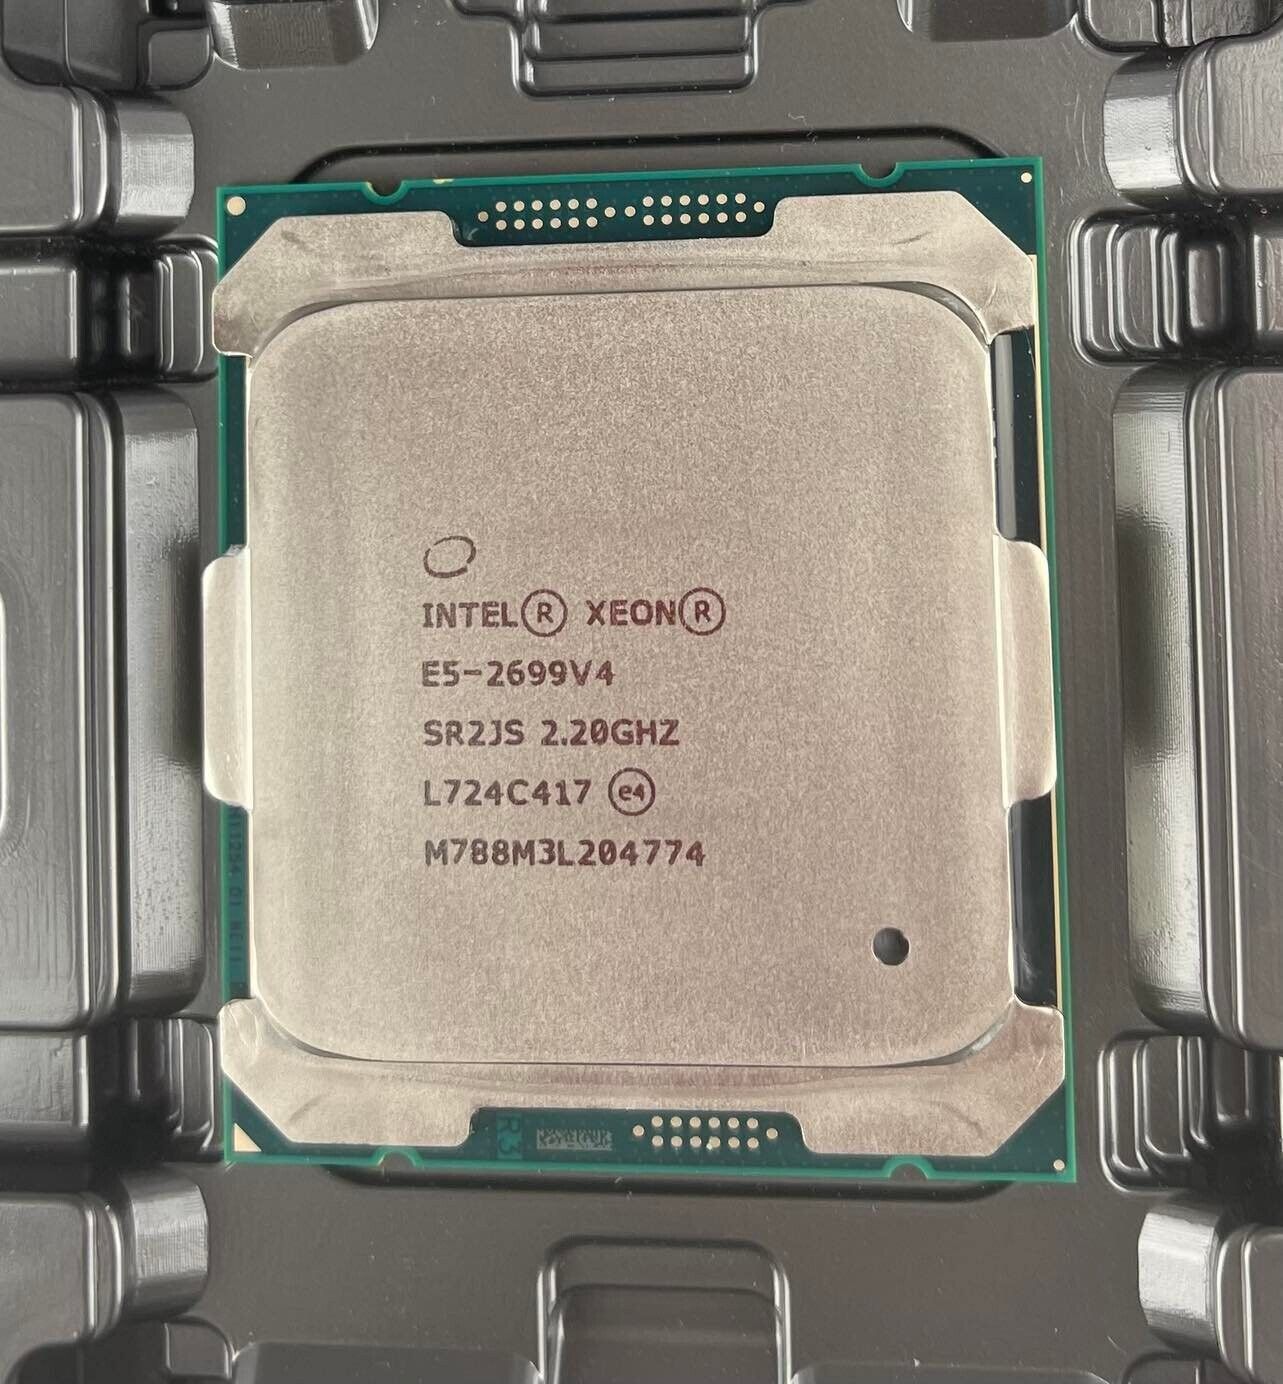 Intel Xeon E5-2699 v4 2.2GHz 55MB 22-Core 145W LGA2011-3 SR2JS